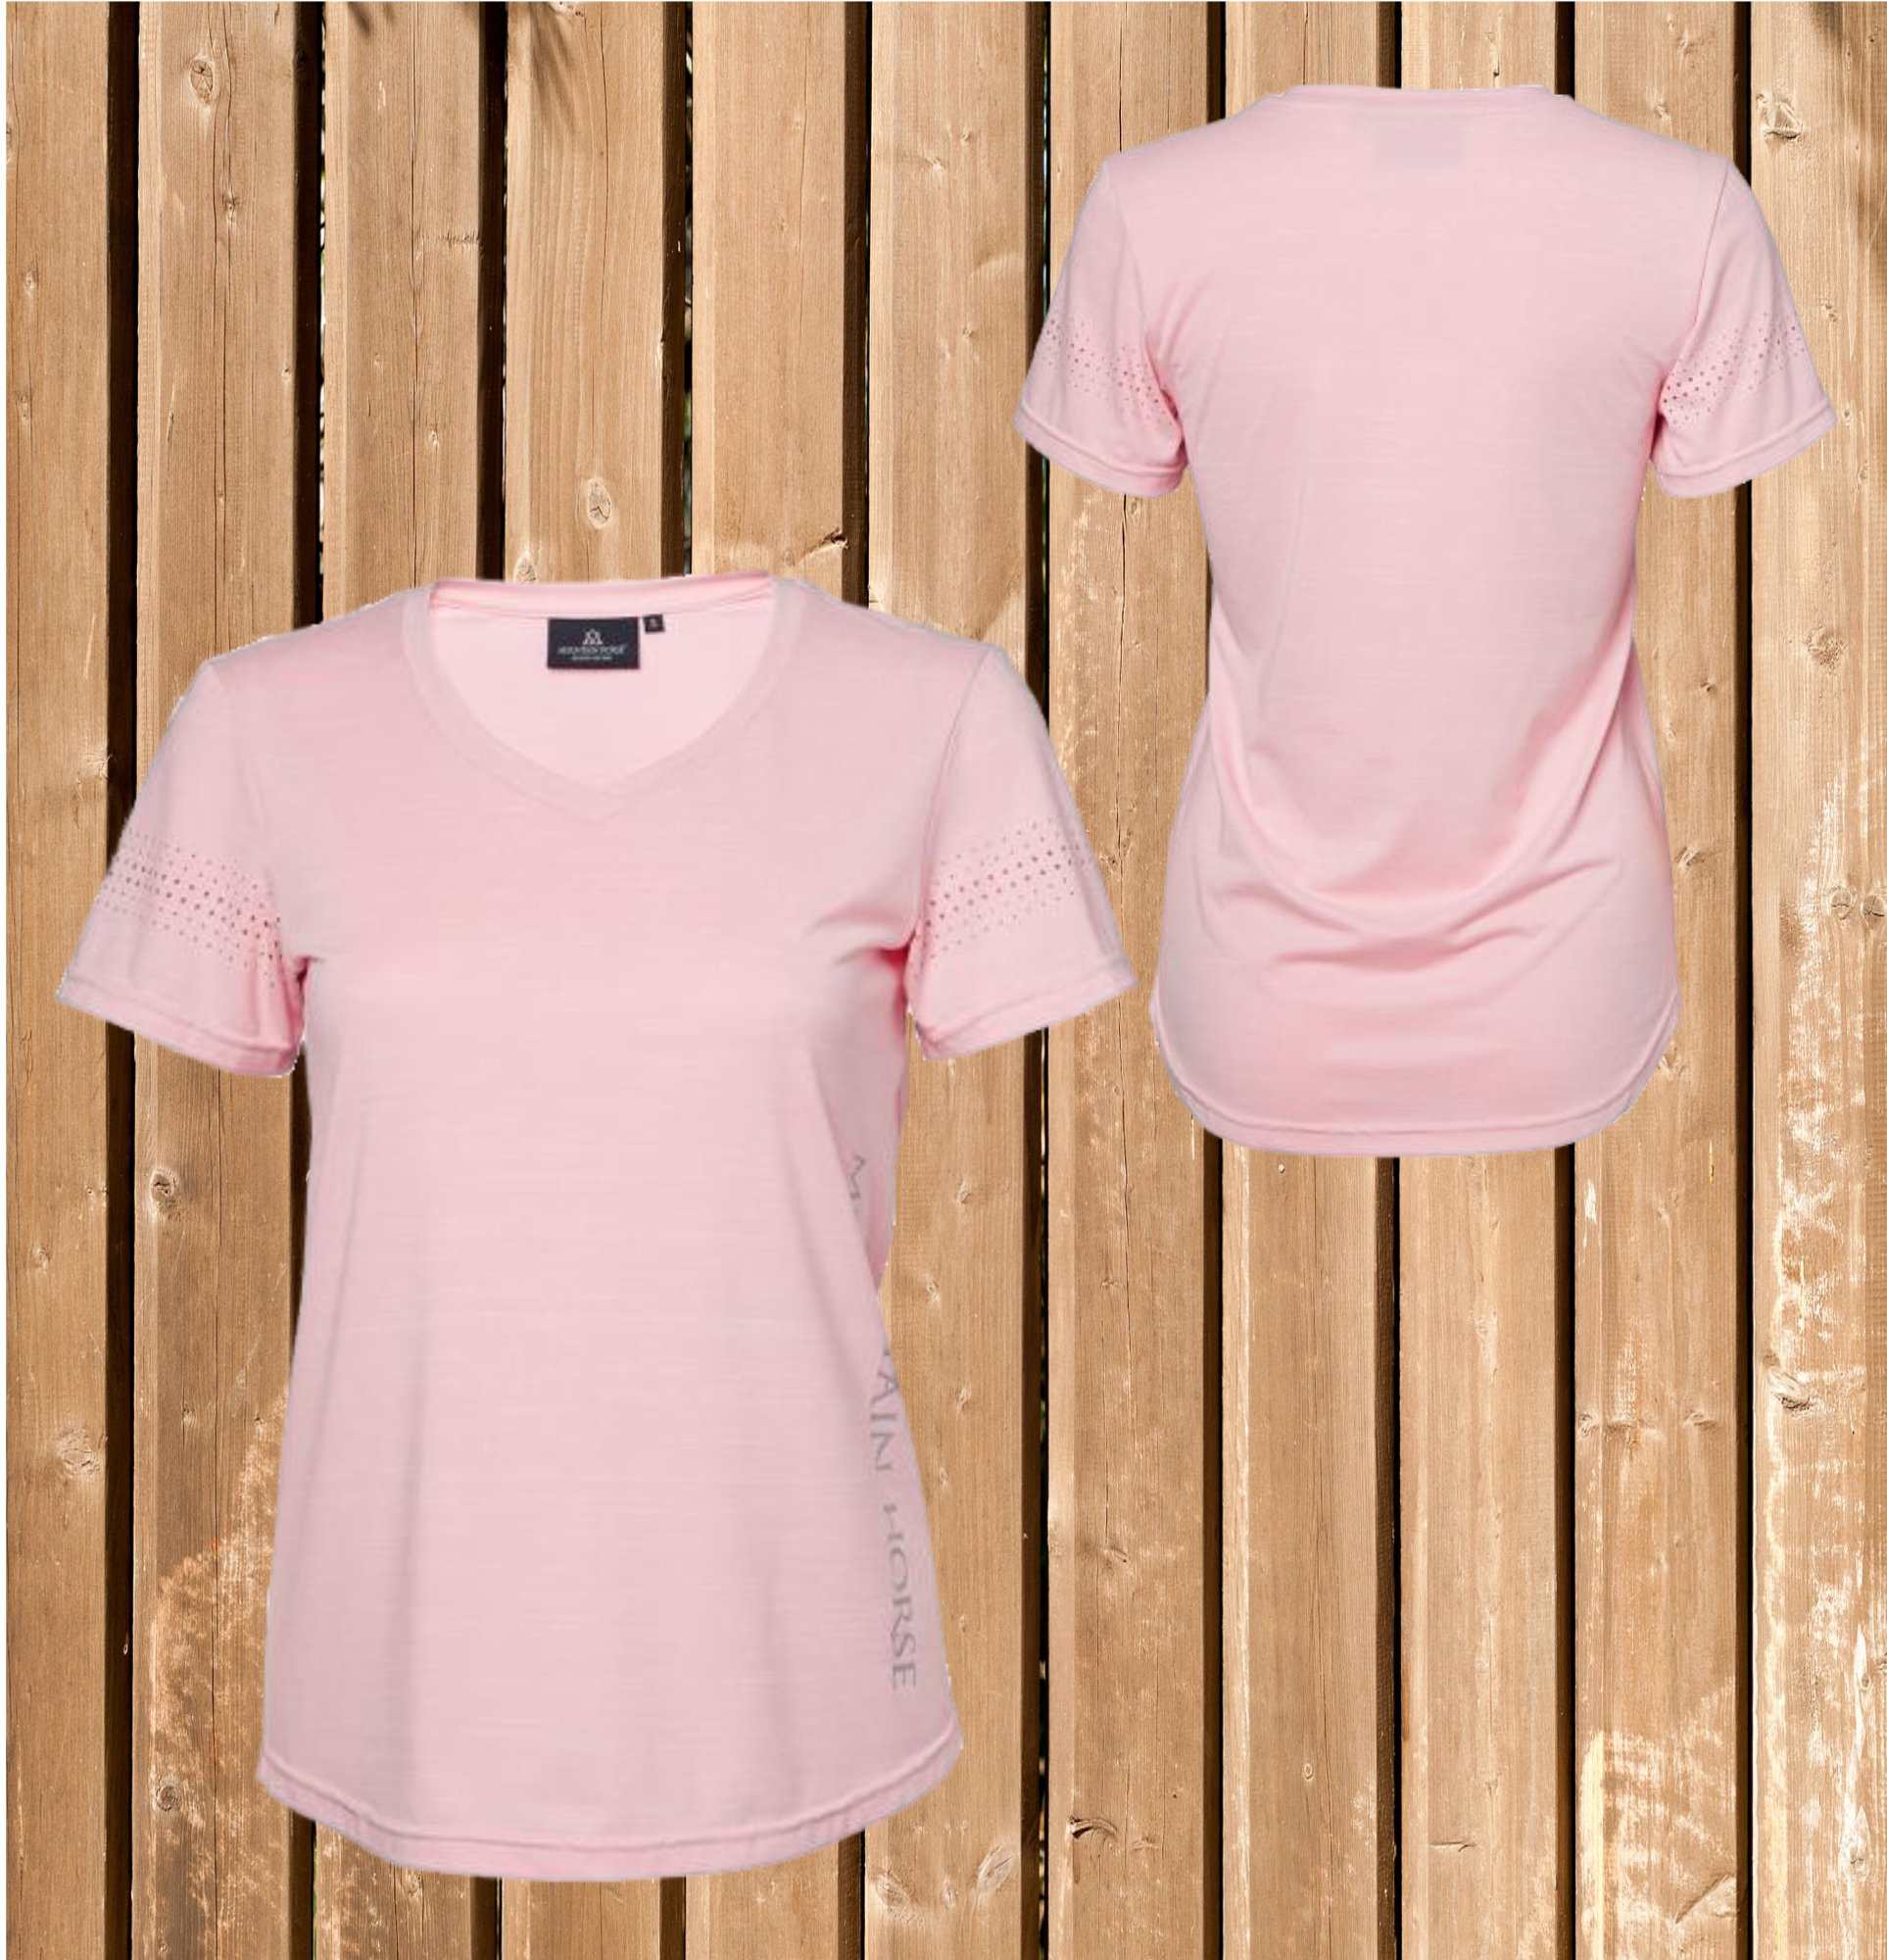 Mountain Horse Tech Top TYRA, Damen Funtionsshirt, soft pink